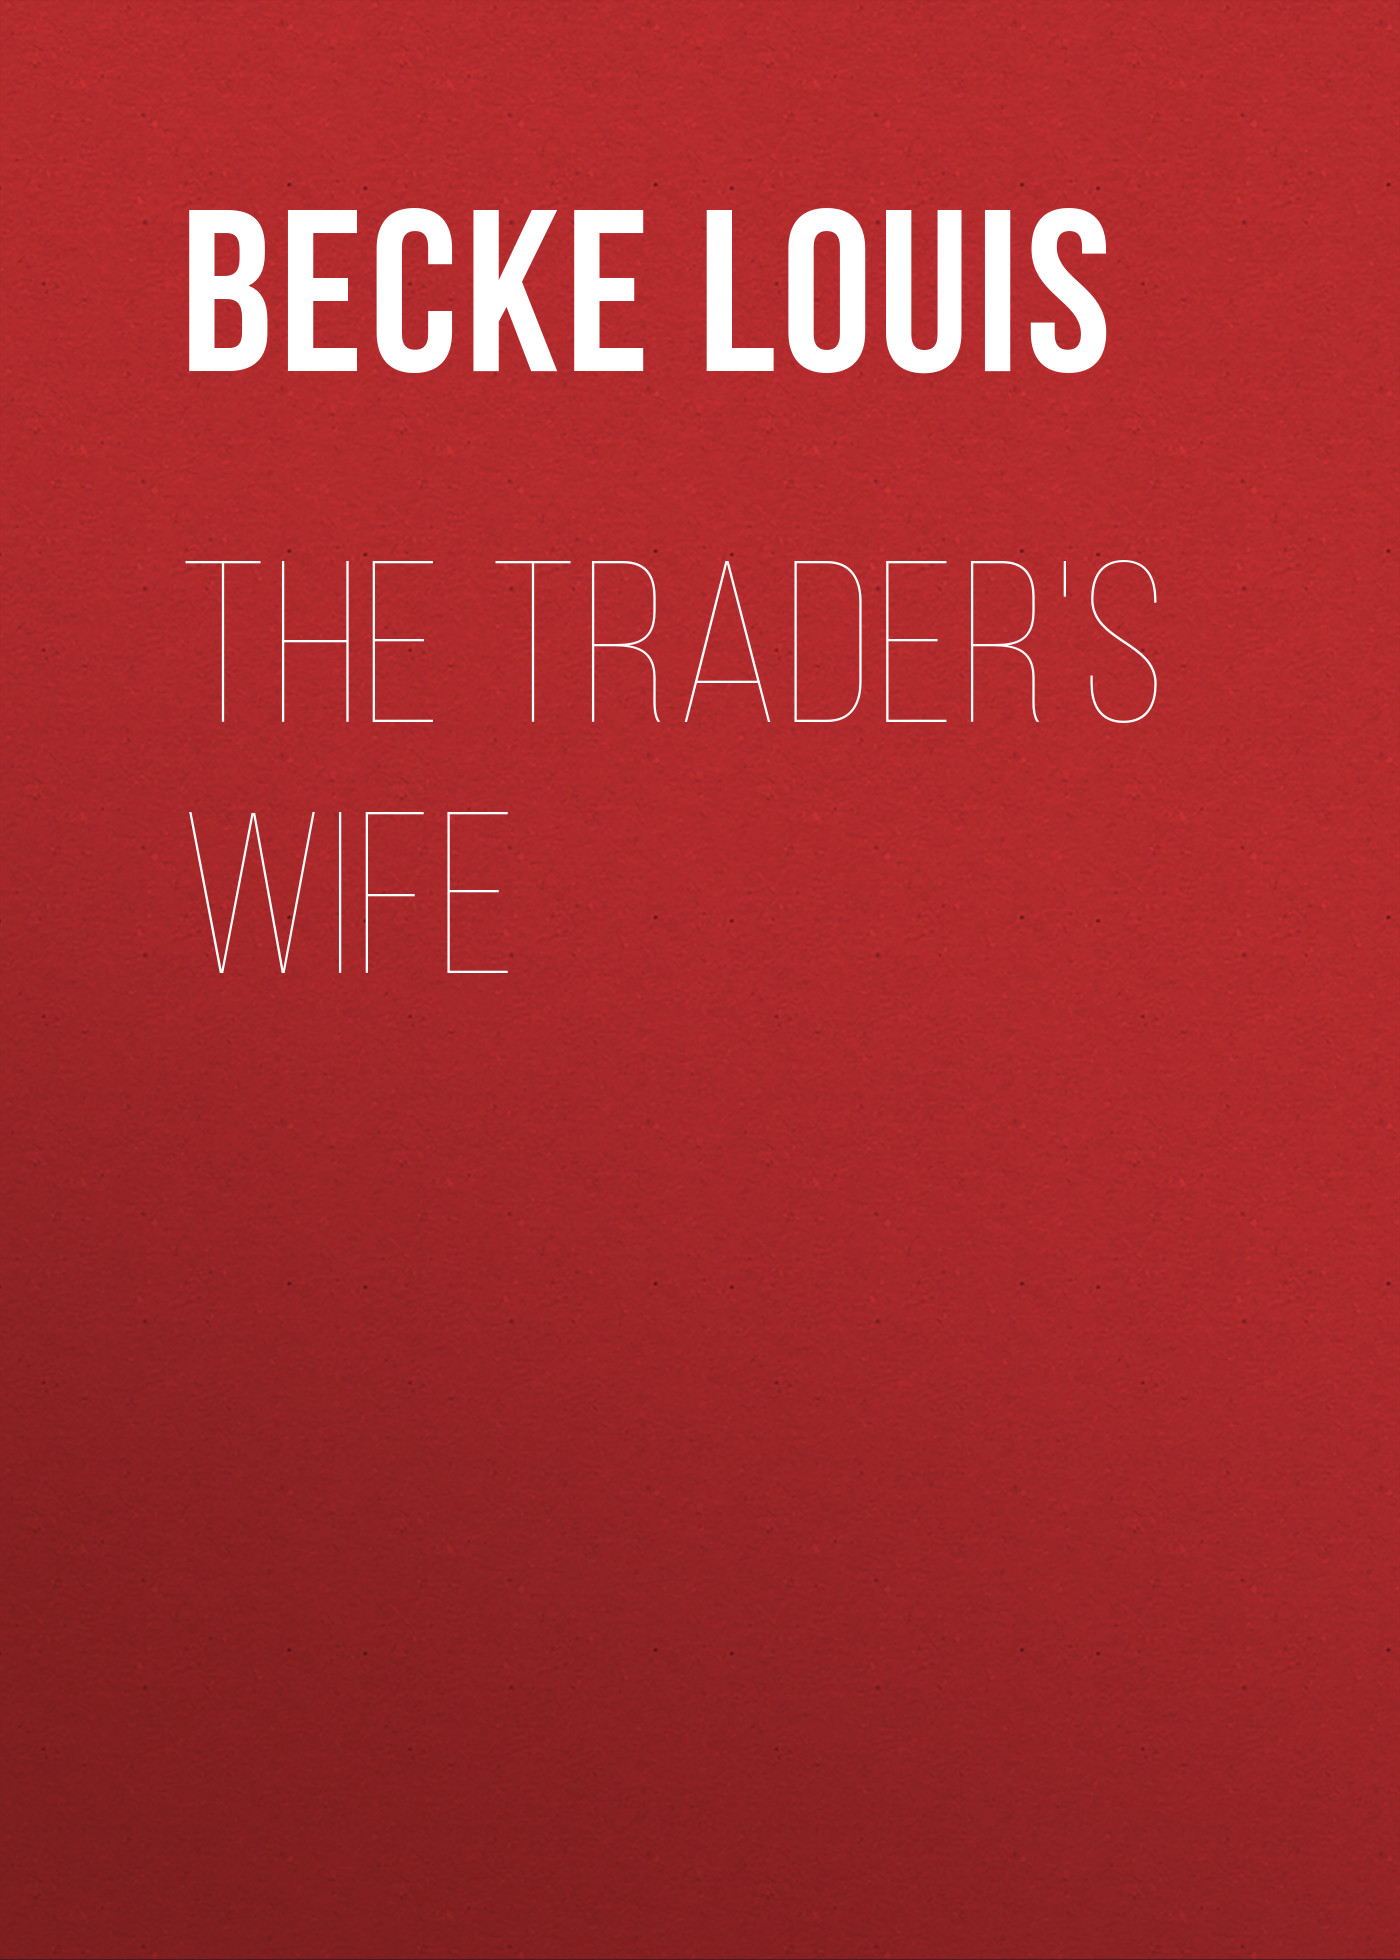 Книга The Trader's Wife из серии , созданная Louis Becke, может относится к жанру Зарубежная классика, Литература 19 века, Зарубежная старинная литература. Стоимость электронной книги The Trader's Wife с идентификатором 36364350 составляет 0 руб.